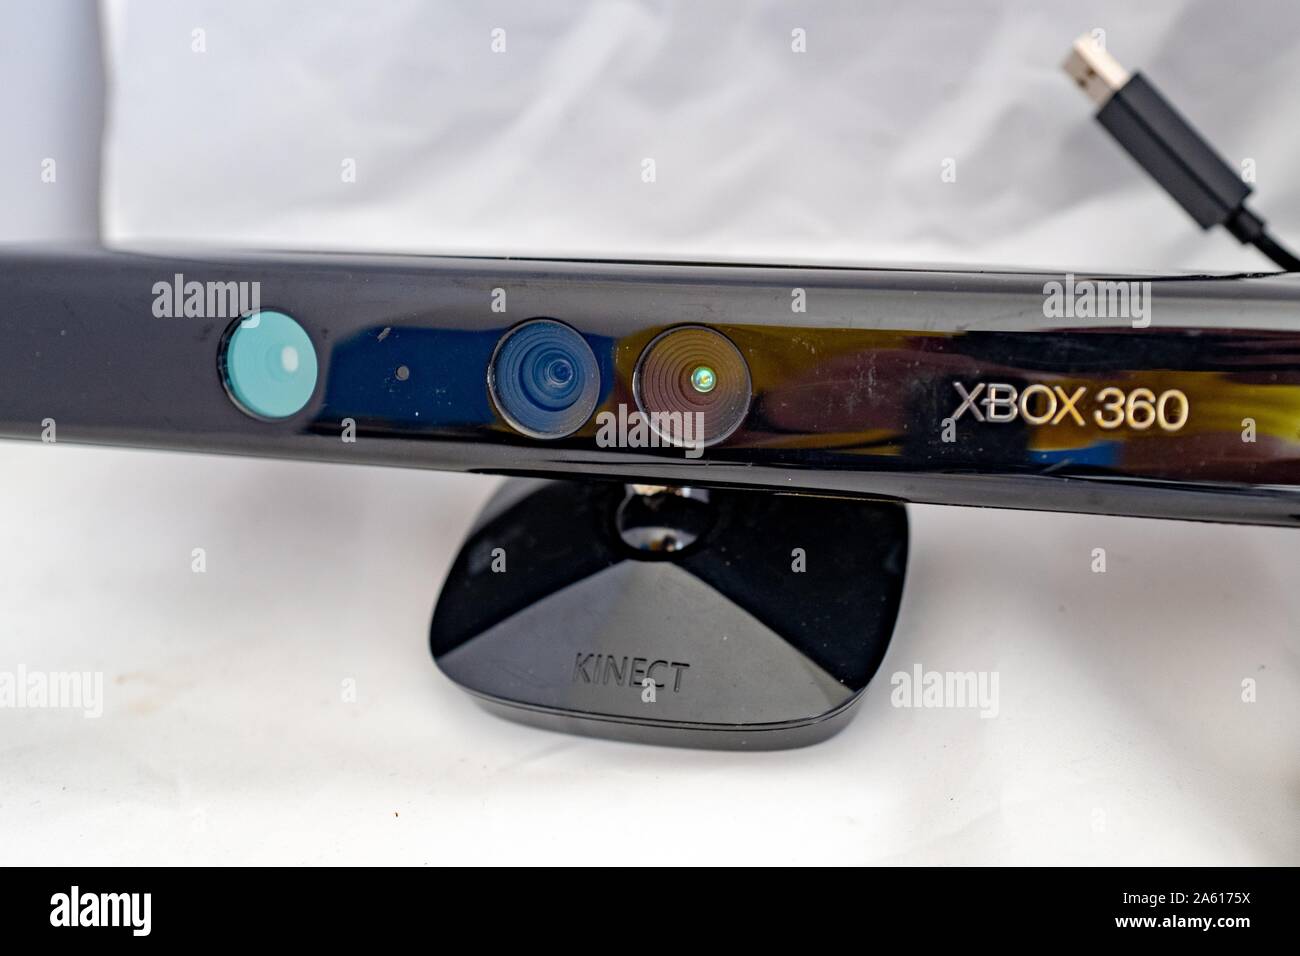 Primer plano de la primera generación de Xbox 360 controlador de juegos con detección de movimiento Kinect, una cámara de baja profundidad diseñada para permitir el control de gestos de los sistemas de videojuegos Microsoft Xbox, CA 2010, sobre fondo blanco, 27 de agosto de 2019. () Foto de stock